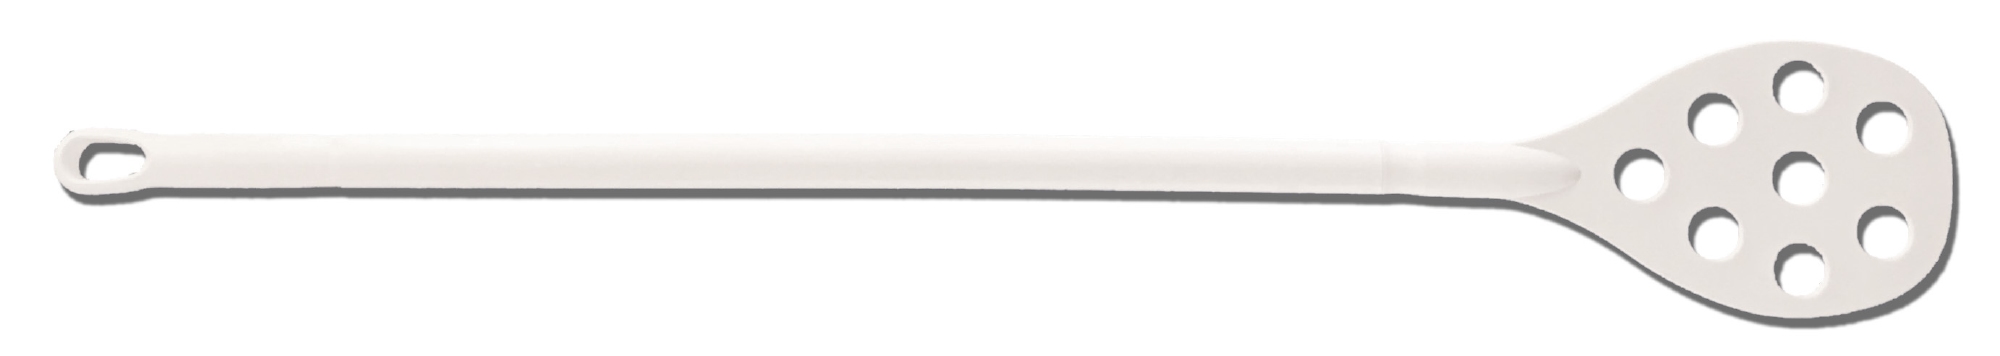 Geperforeerde roerspatel Polyprop (blade 16 x 26cm)  wit